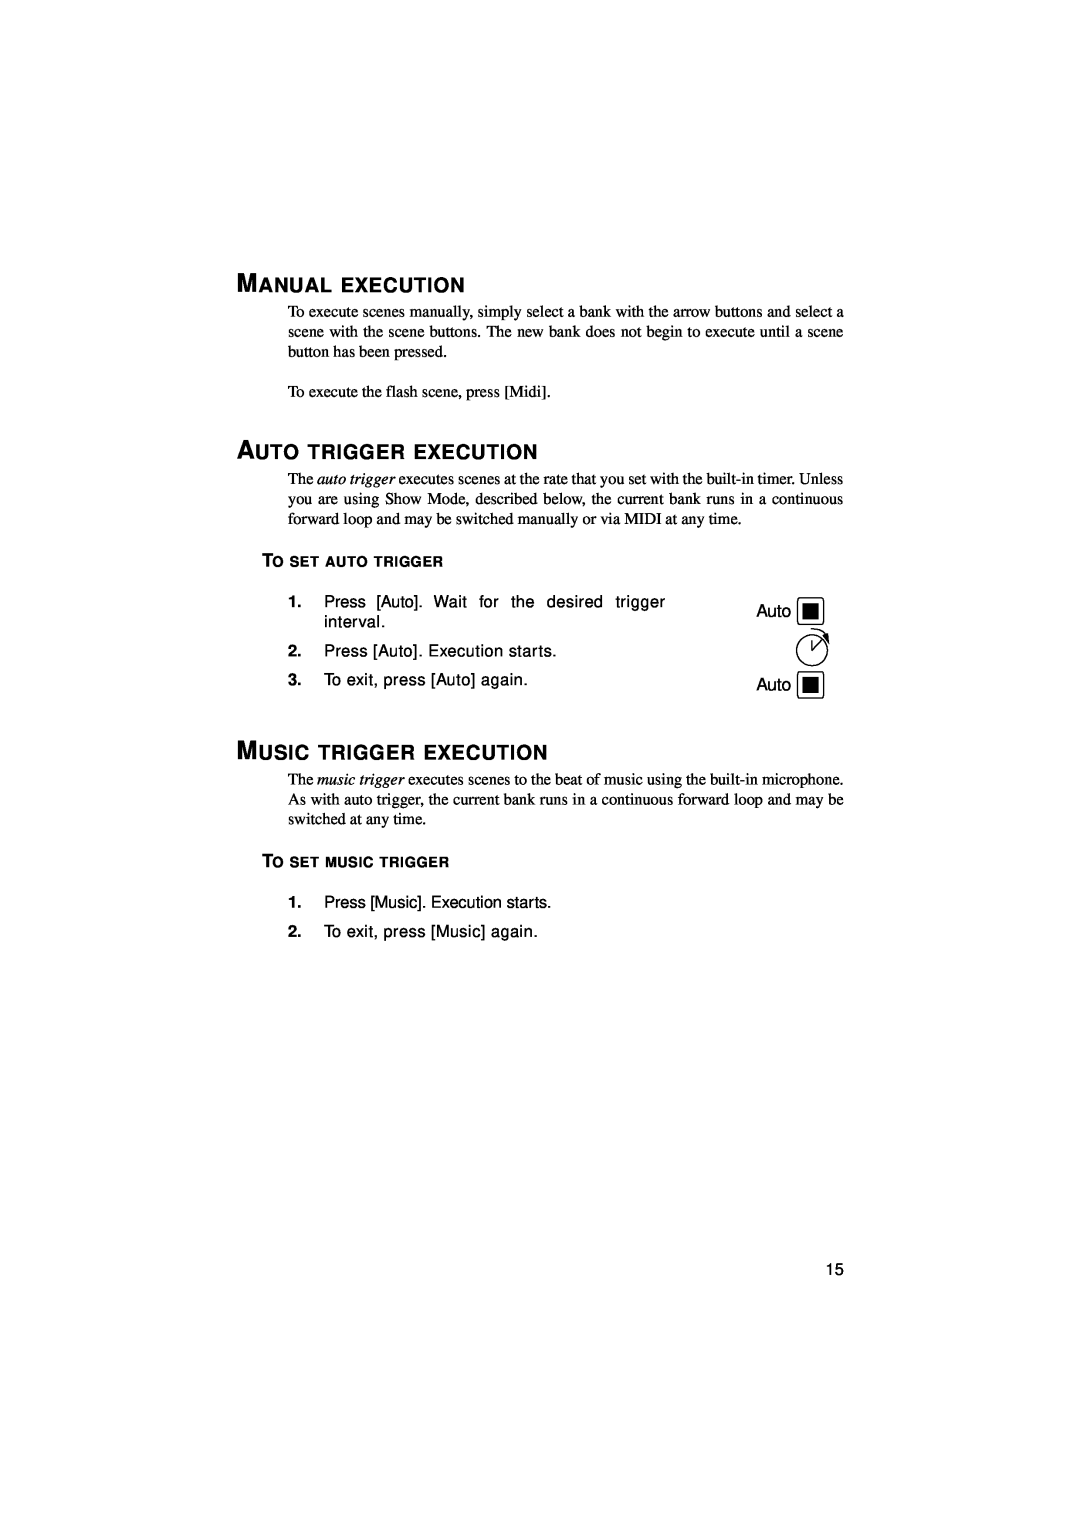 Martin Fireplaces 2518 user manual Manual Execution, Auto Trigger Execution, Music Trigger Execution 